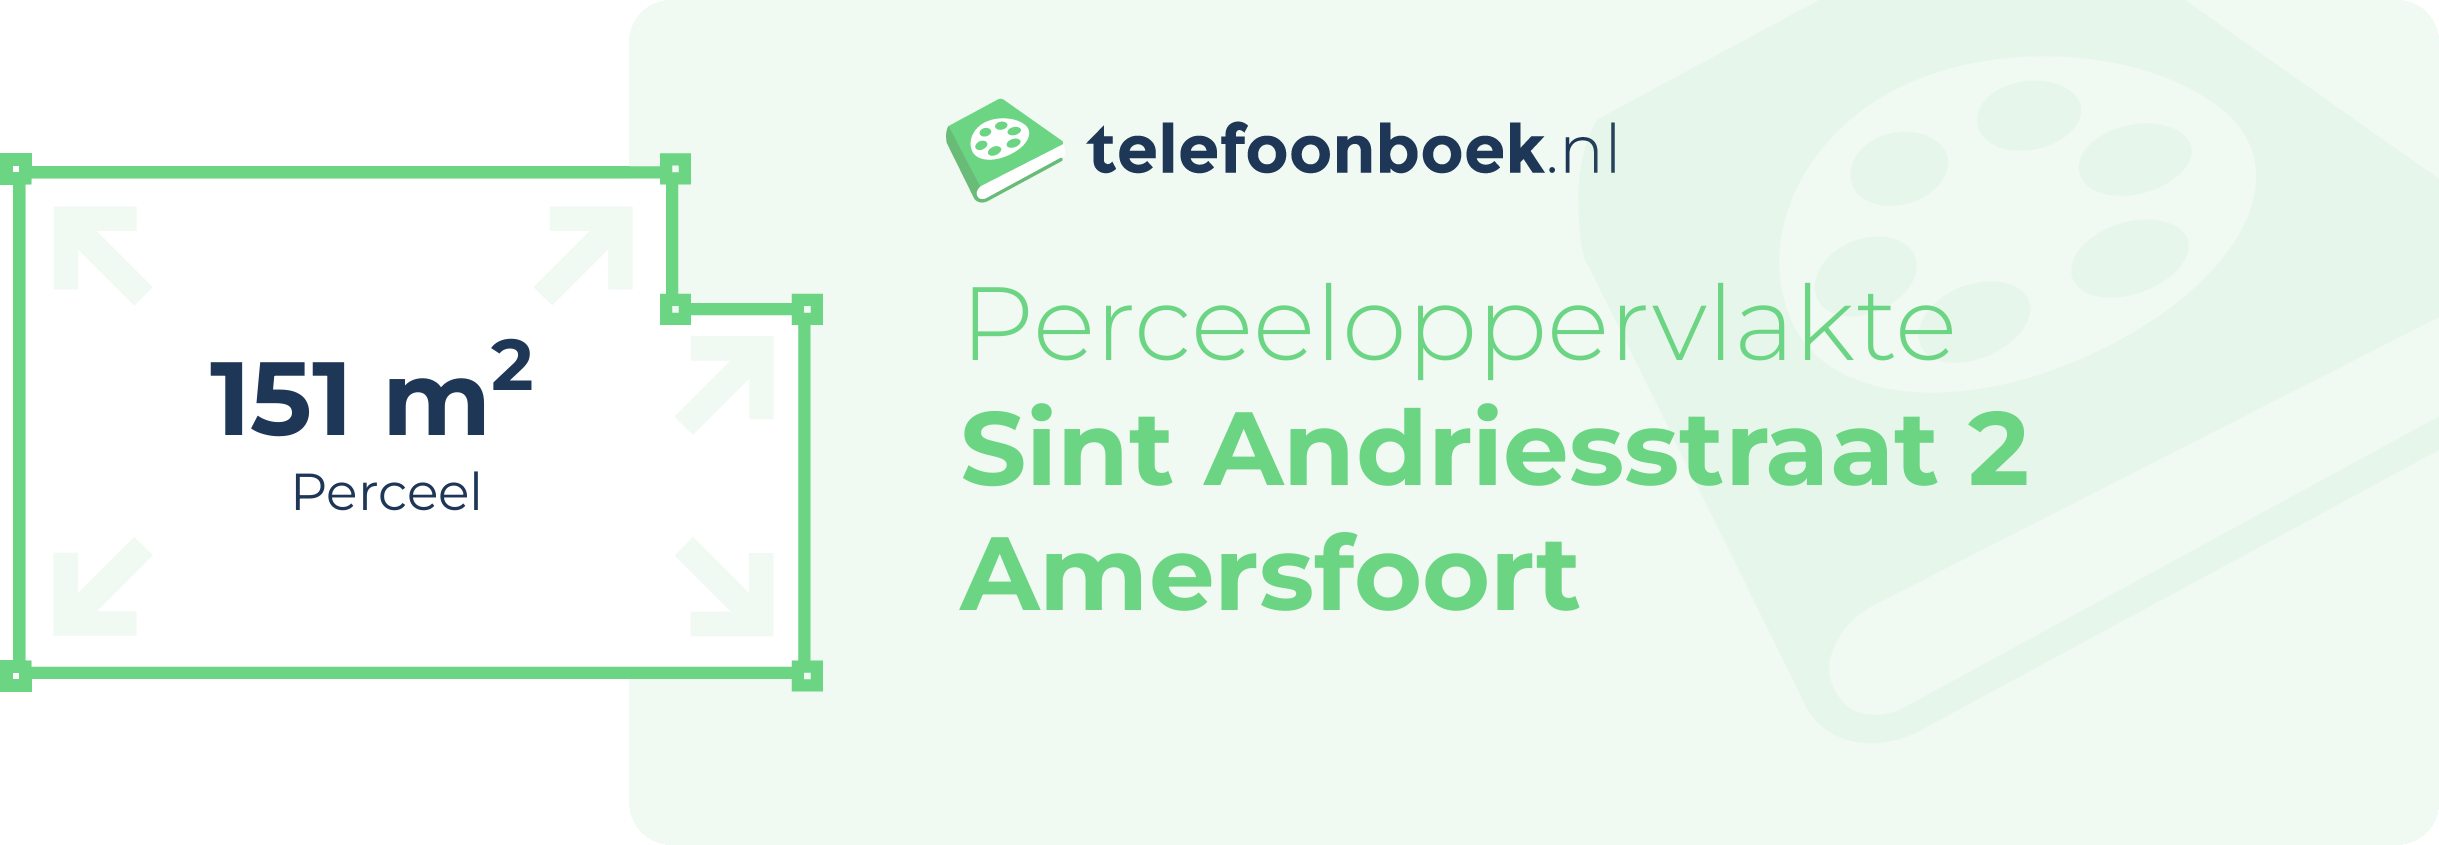 Perceeloppervlakte Sint Andriesstraat 2 Amersfoort